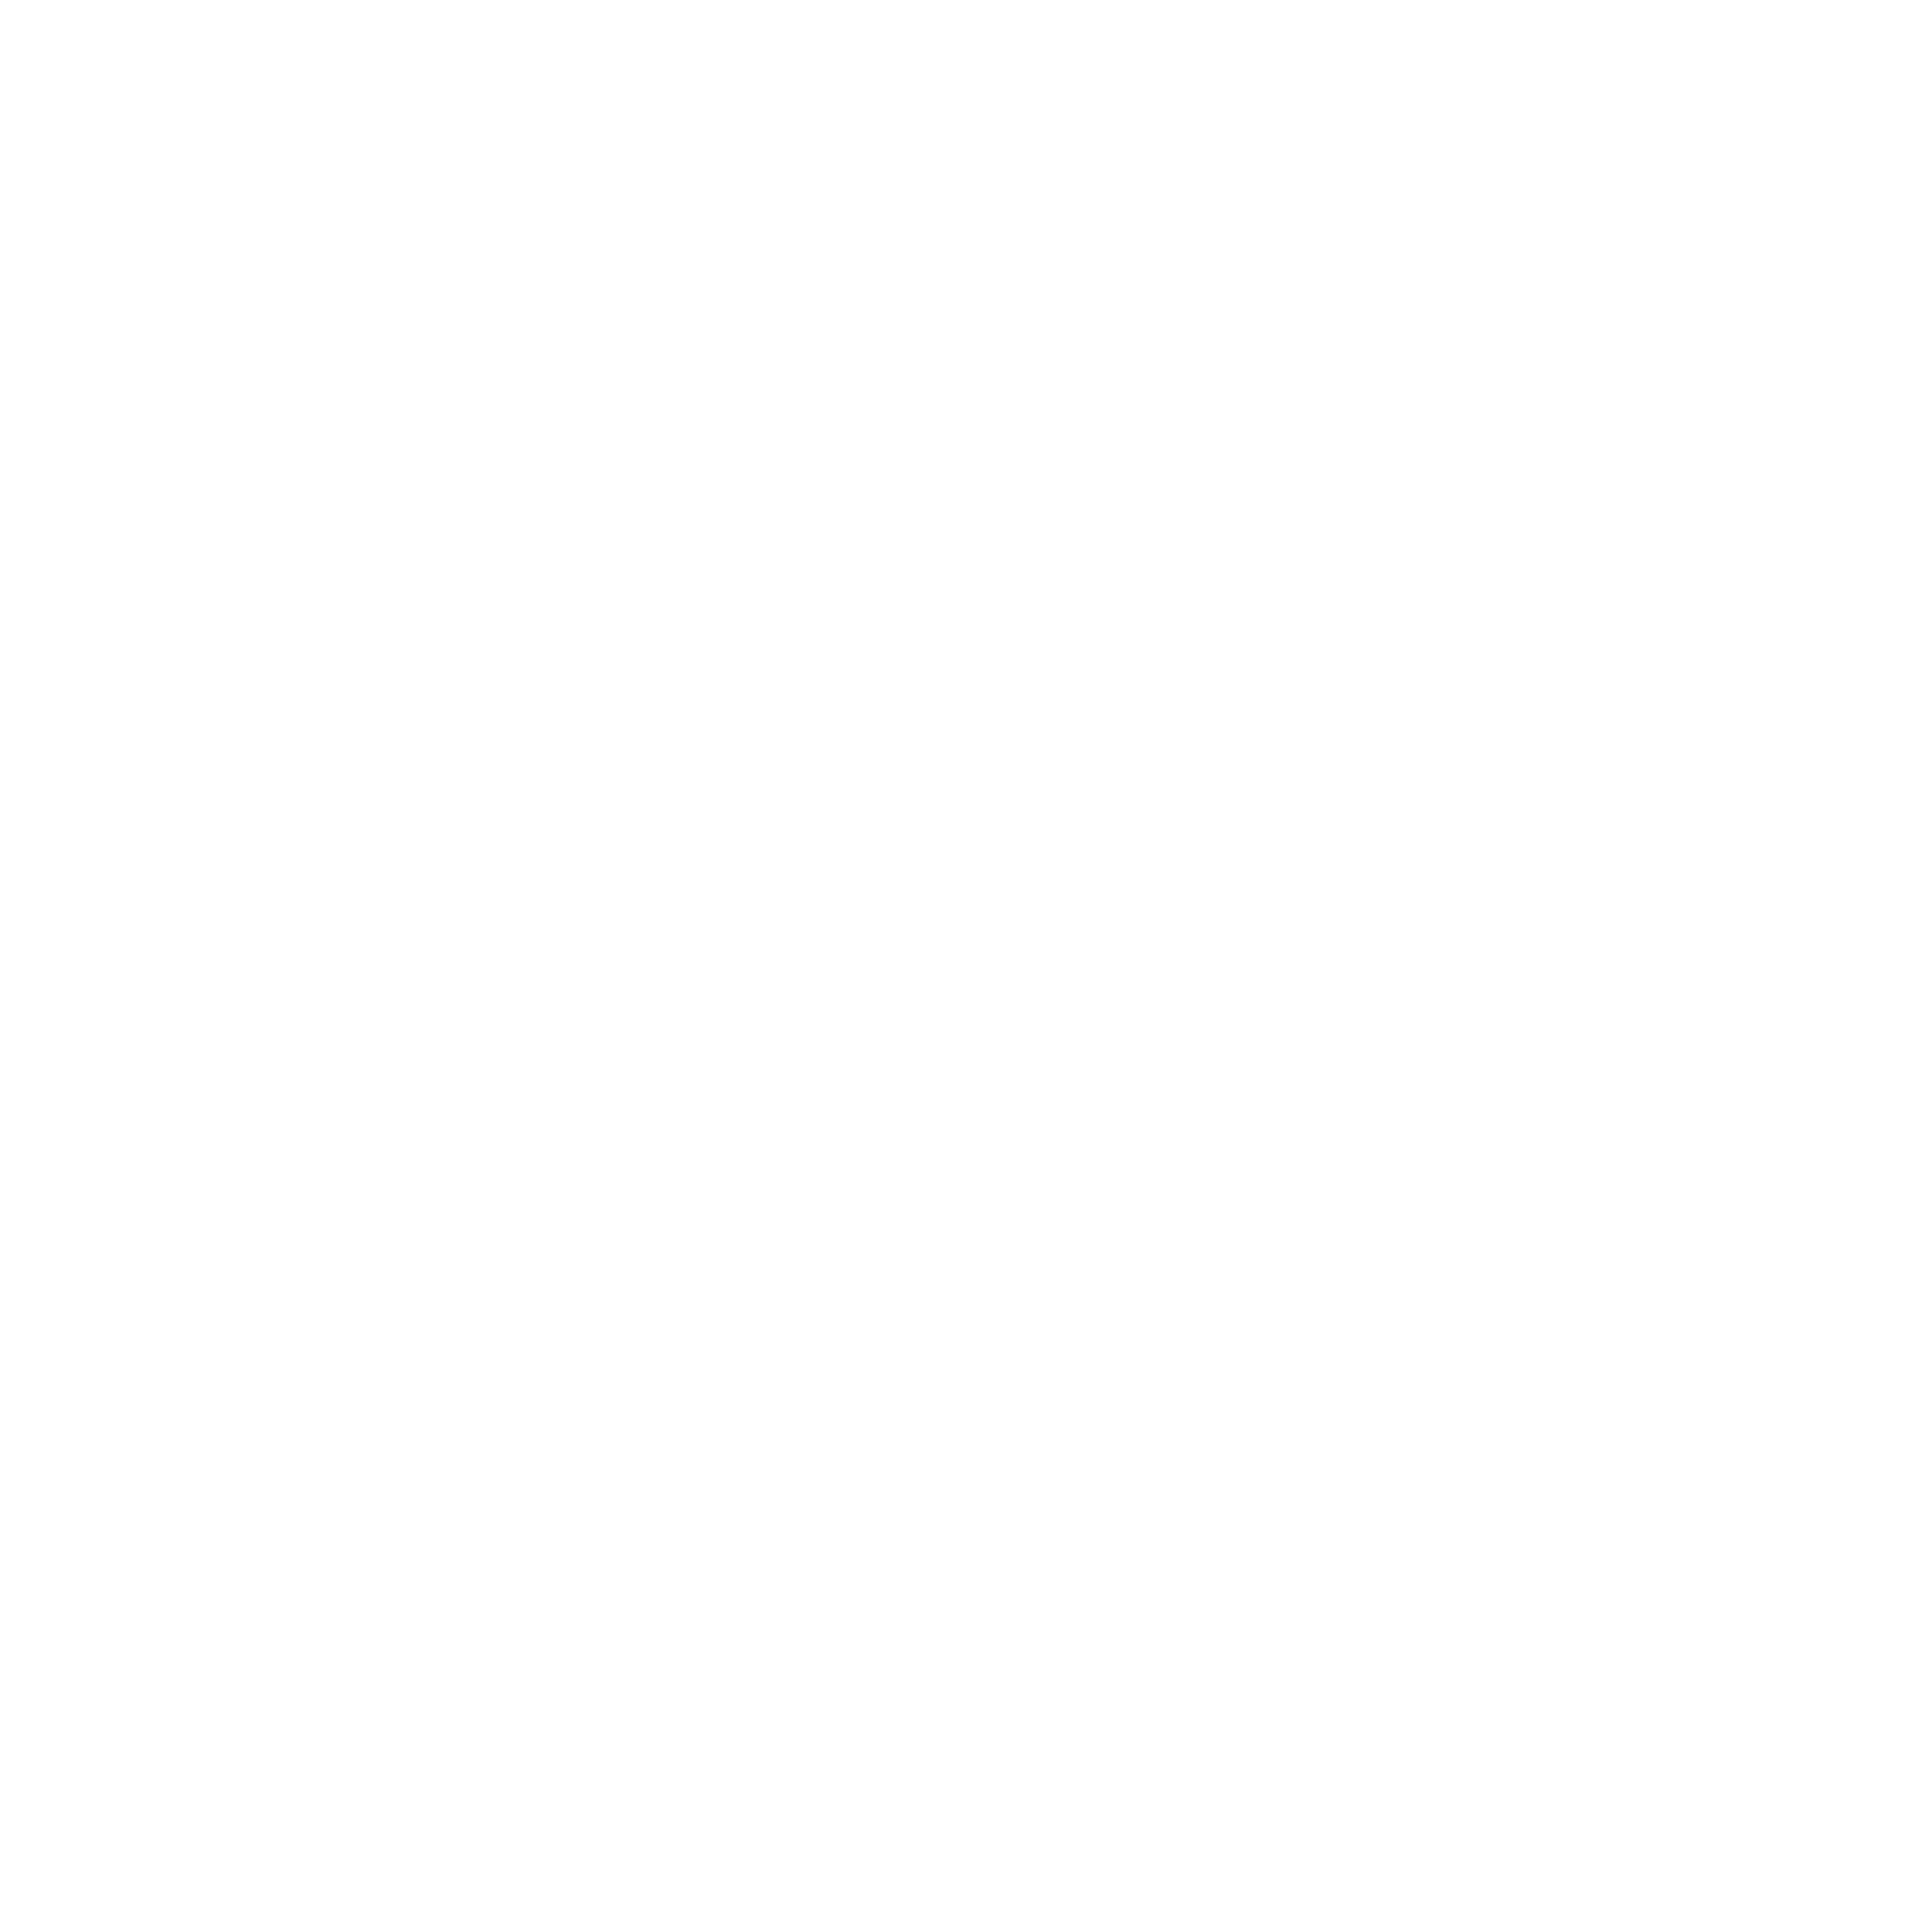 TRW Logo - TRW Logo PNG Transparent & SVG Vector